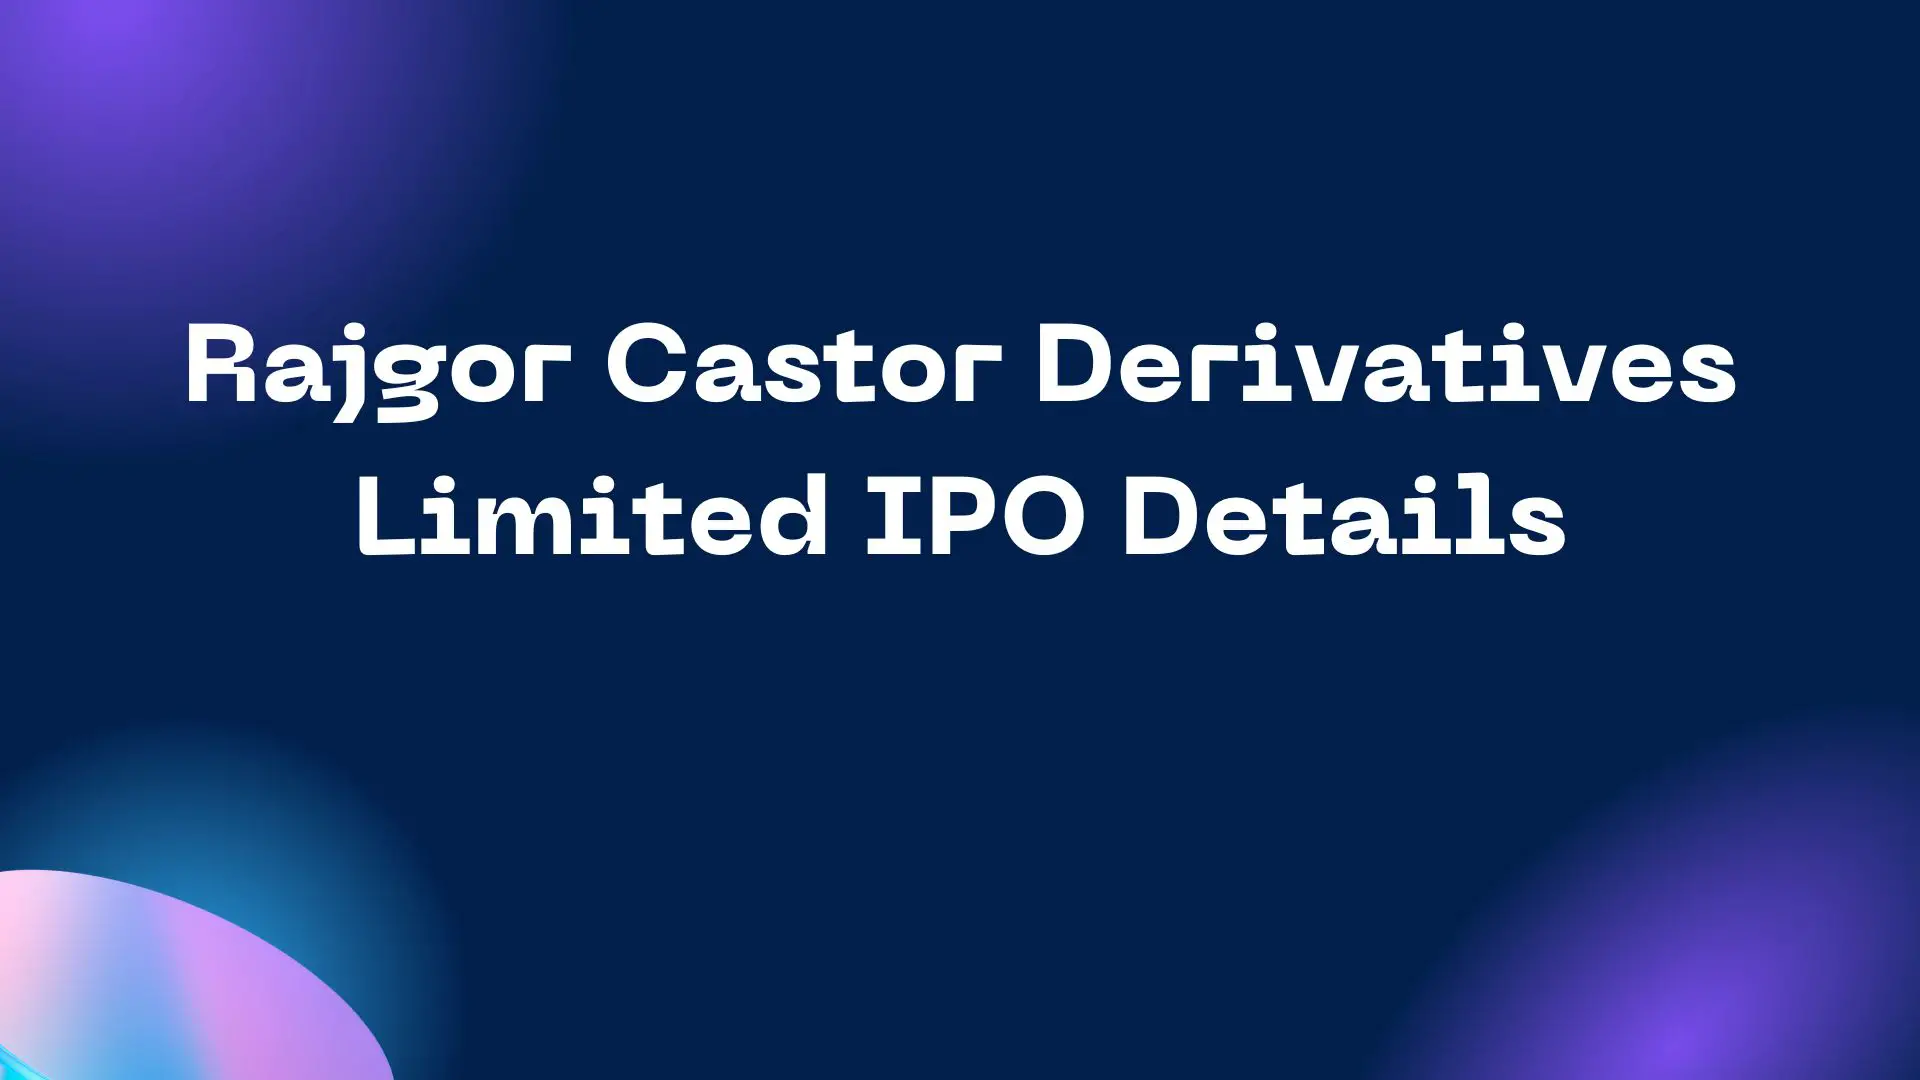 Rajgor Castor Derivatives Limited IPO Details